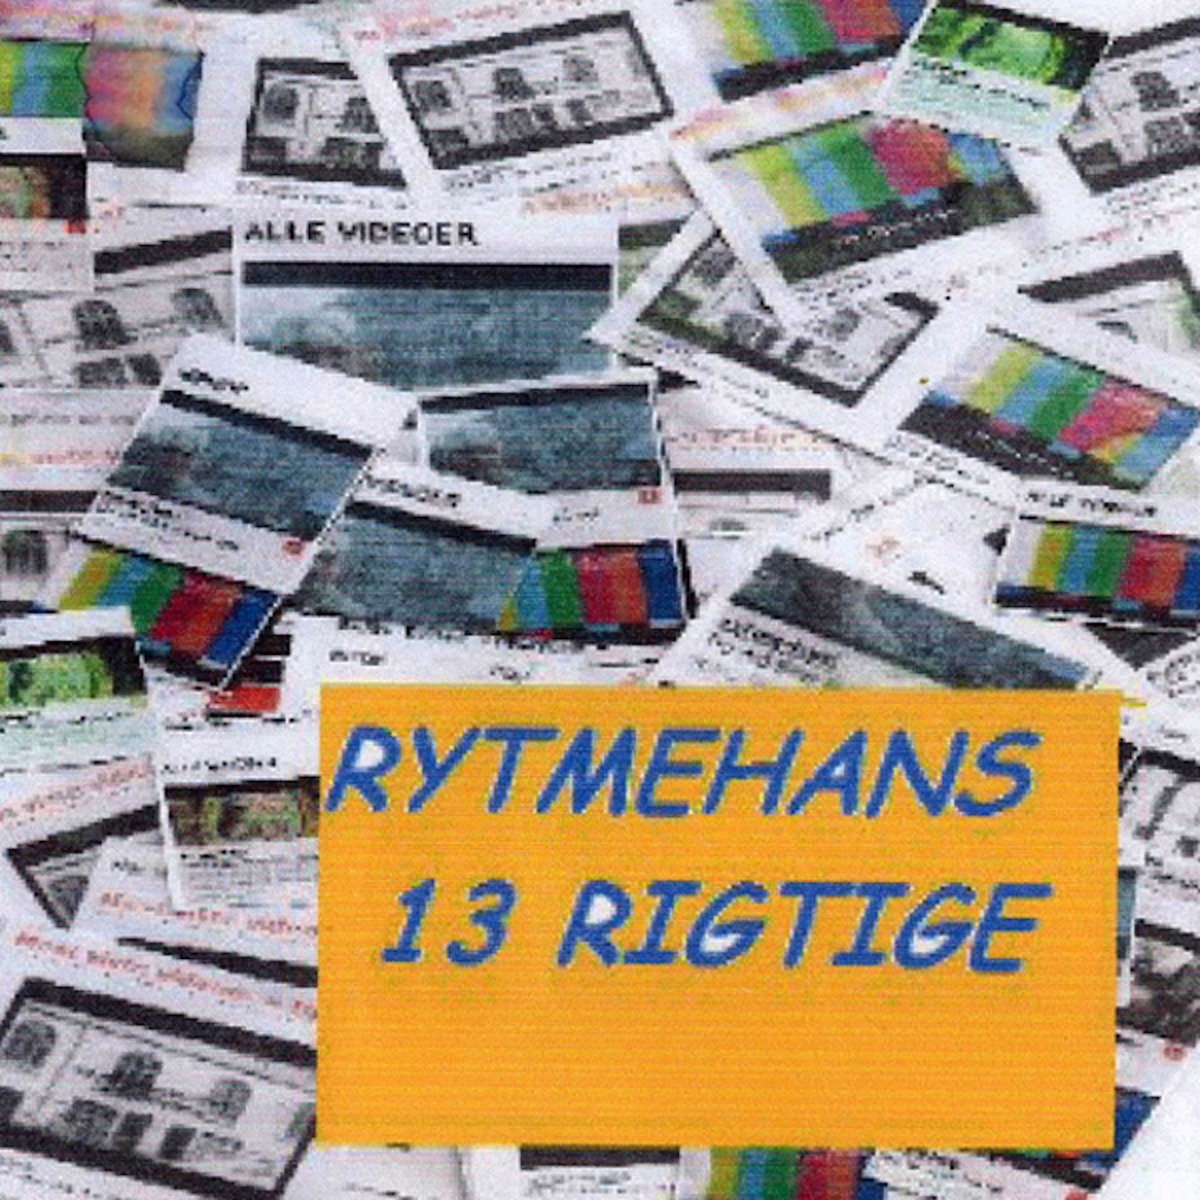 13 Rigtige - Album by Rytmehans - Apple Music